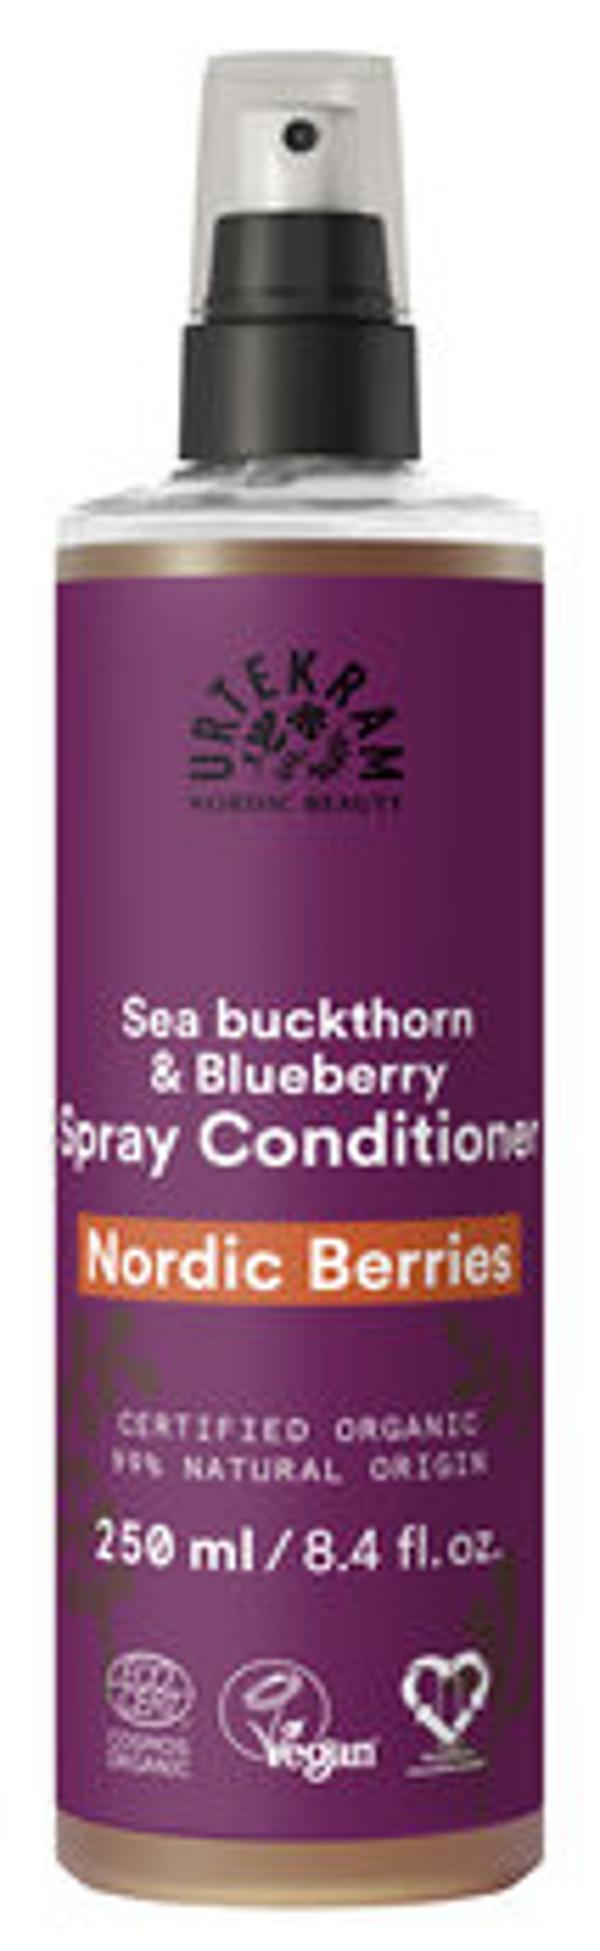 Produktfoto zu Spray Conditioner Nordic Berries